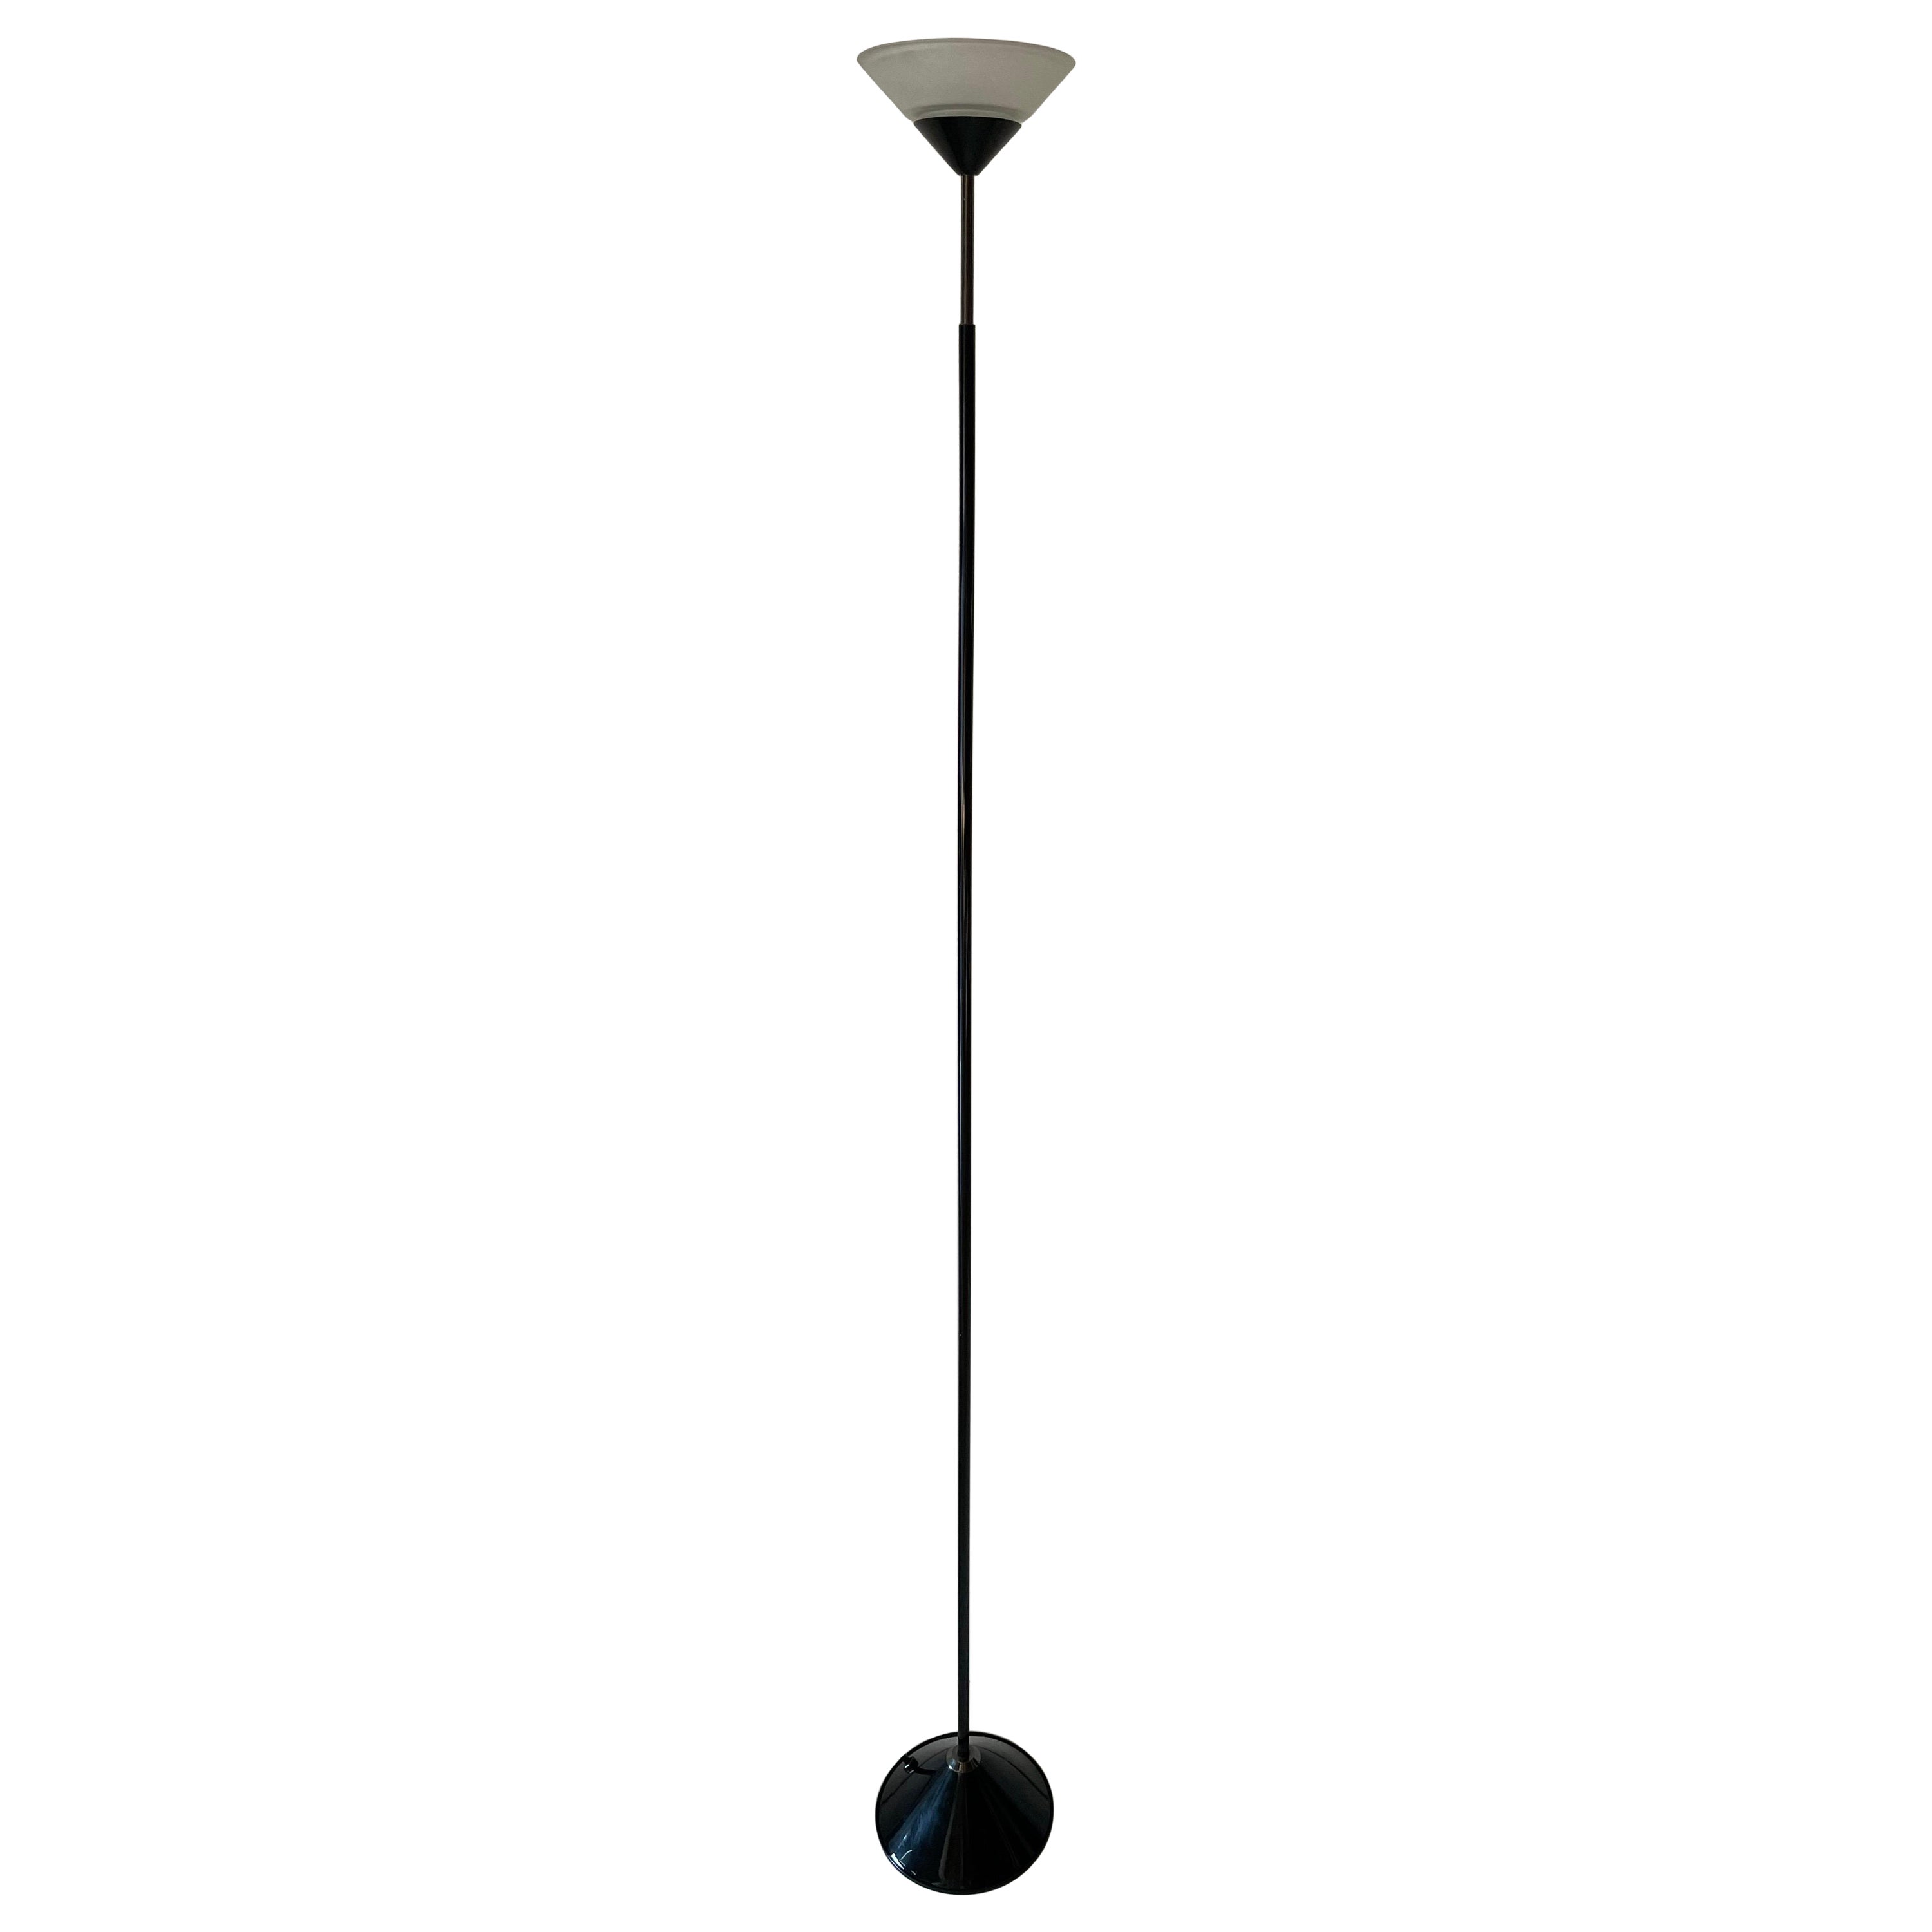 Stehlampe aus konischem Glas und schwarzem Metall von Tronconi, 1970er Jahre, Italien